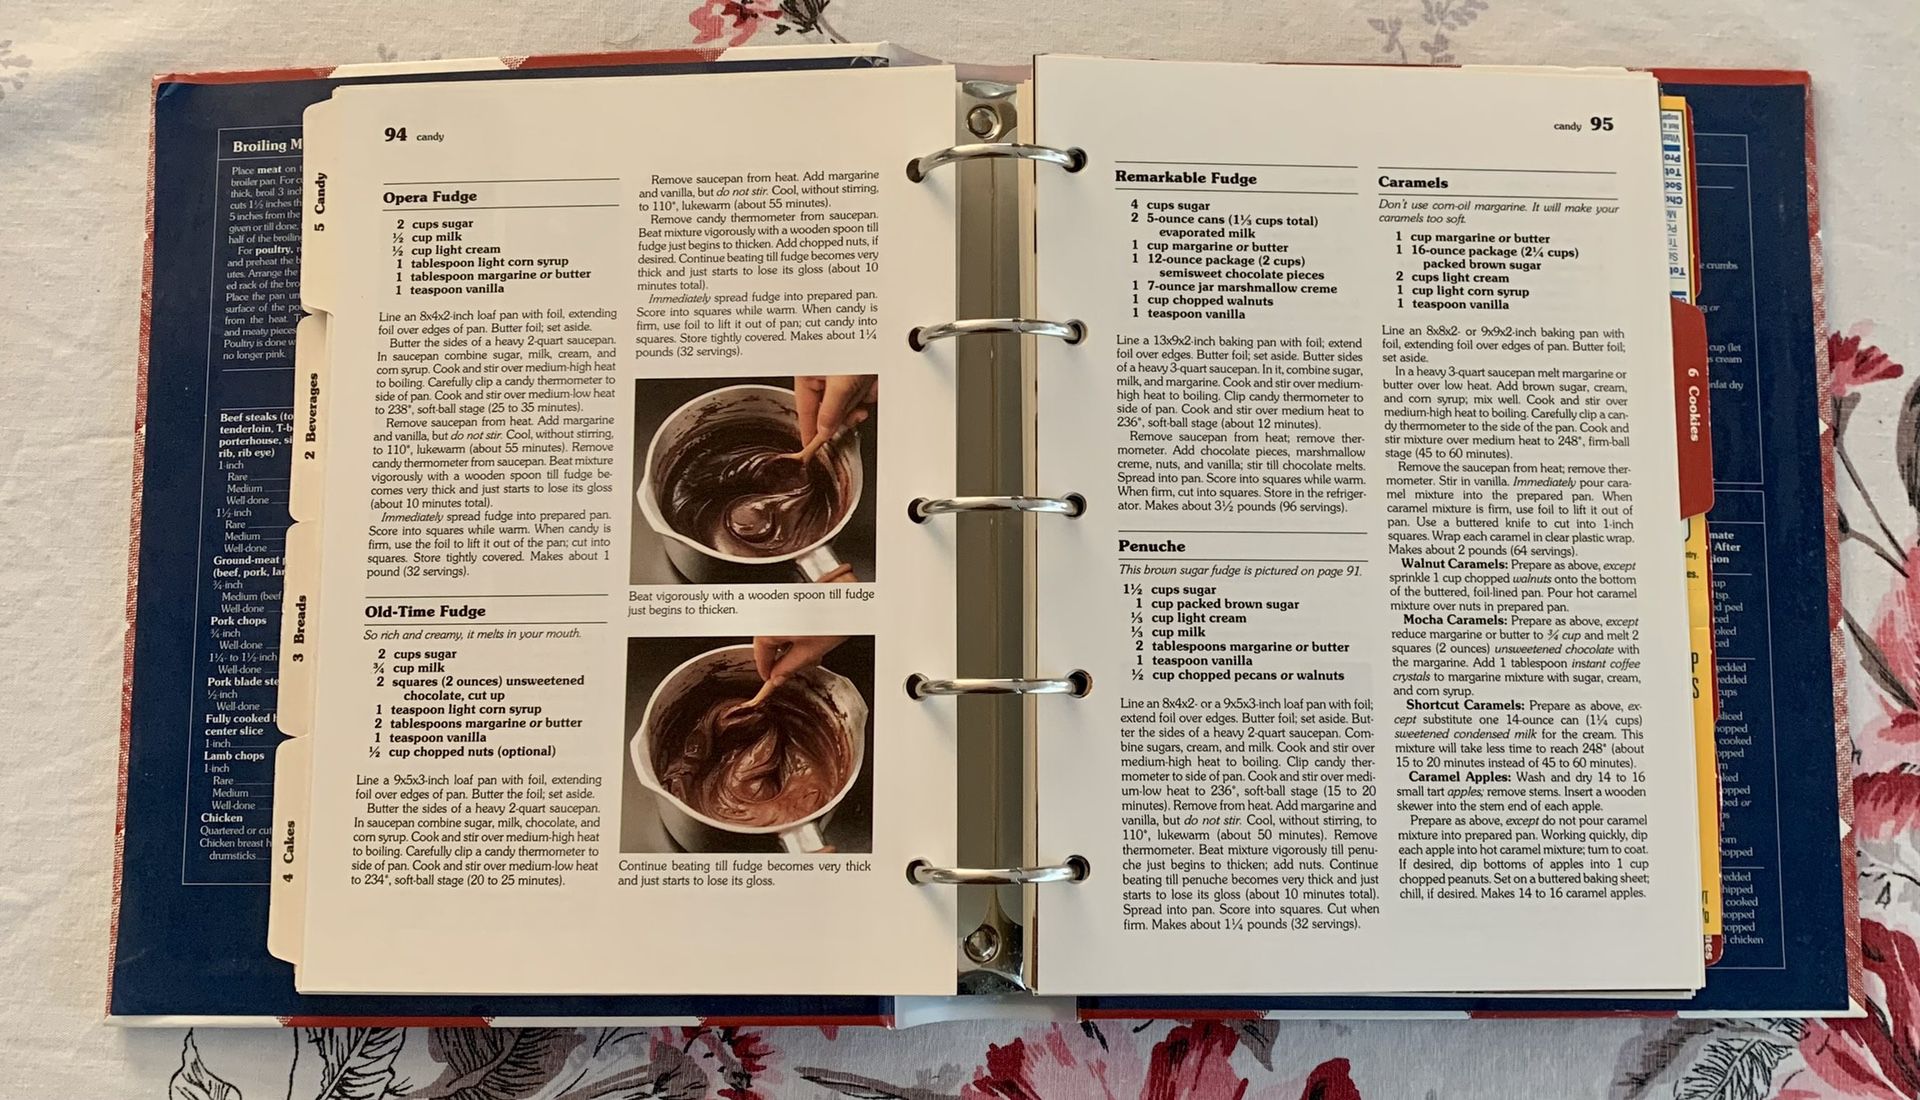 Vintage 1989 better homes and gardens new cookbook. Five Ring Hardback Binder